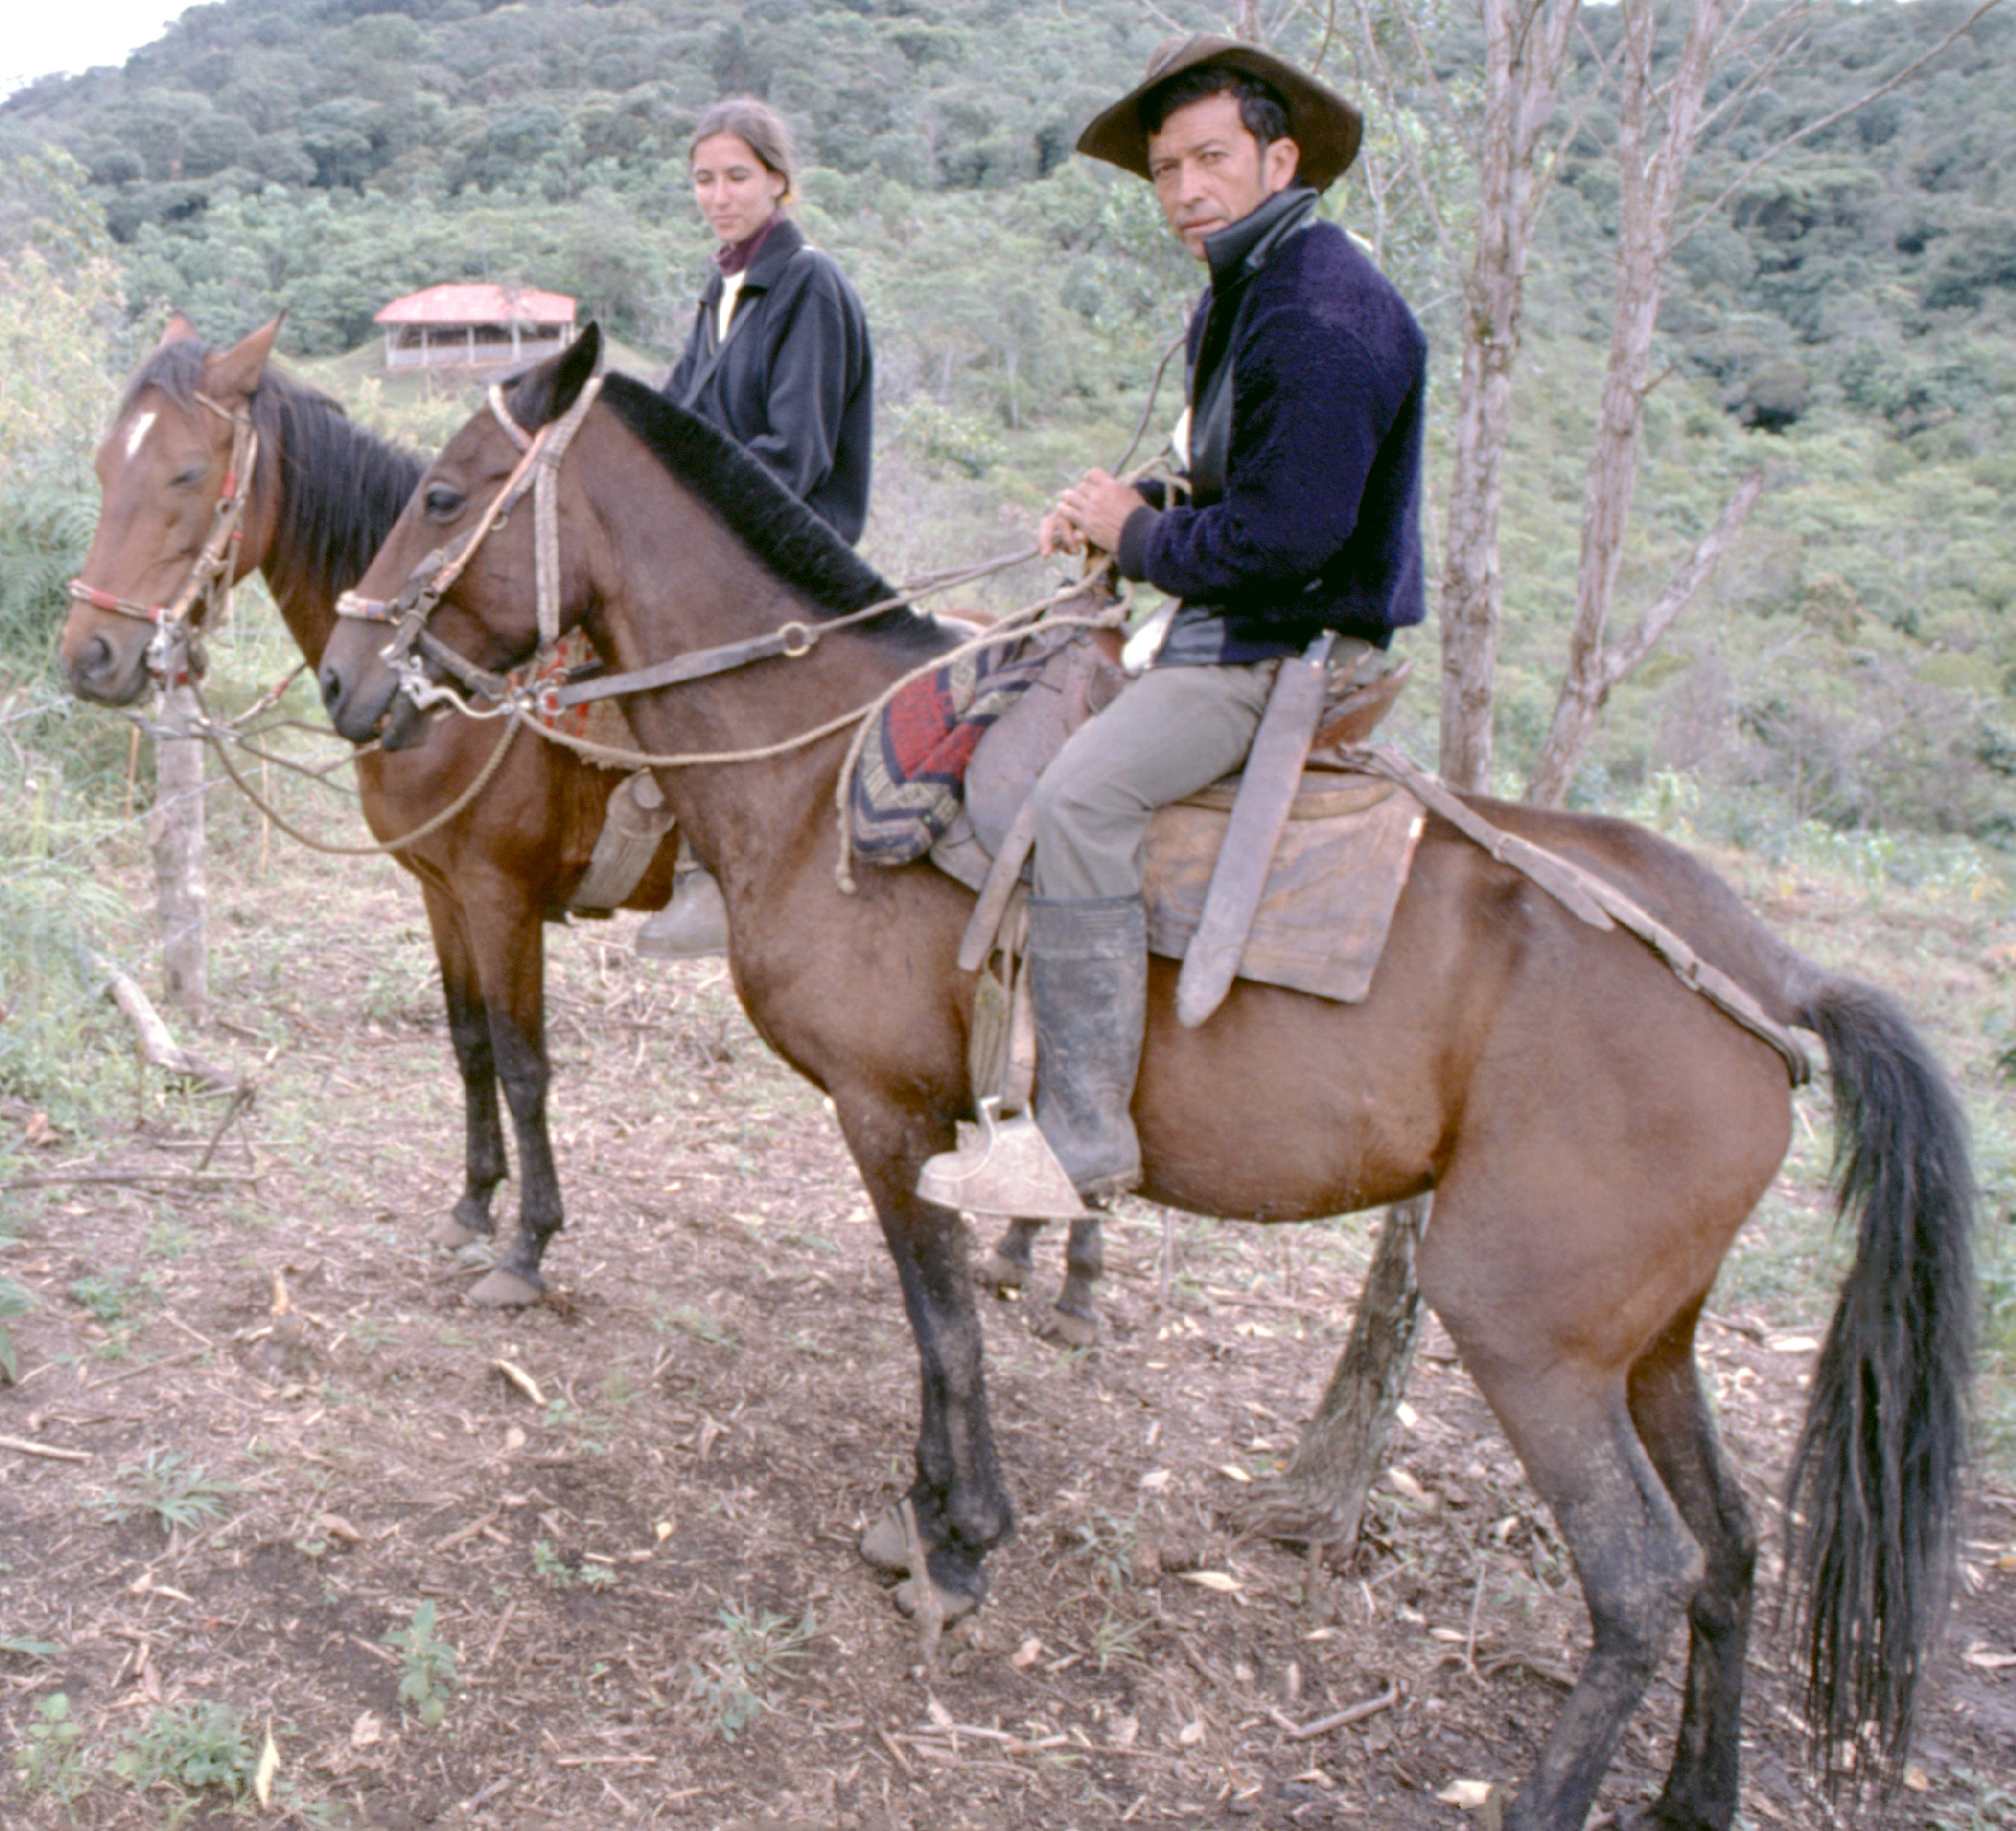 Pour les amoureux de découvertes et de cheval, San Agustin est un site unique en Amérique latine.